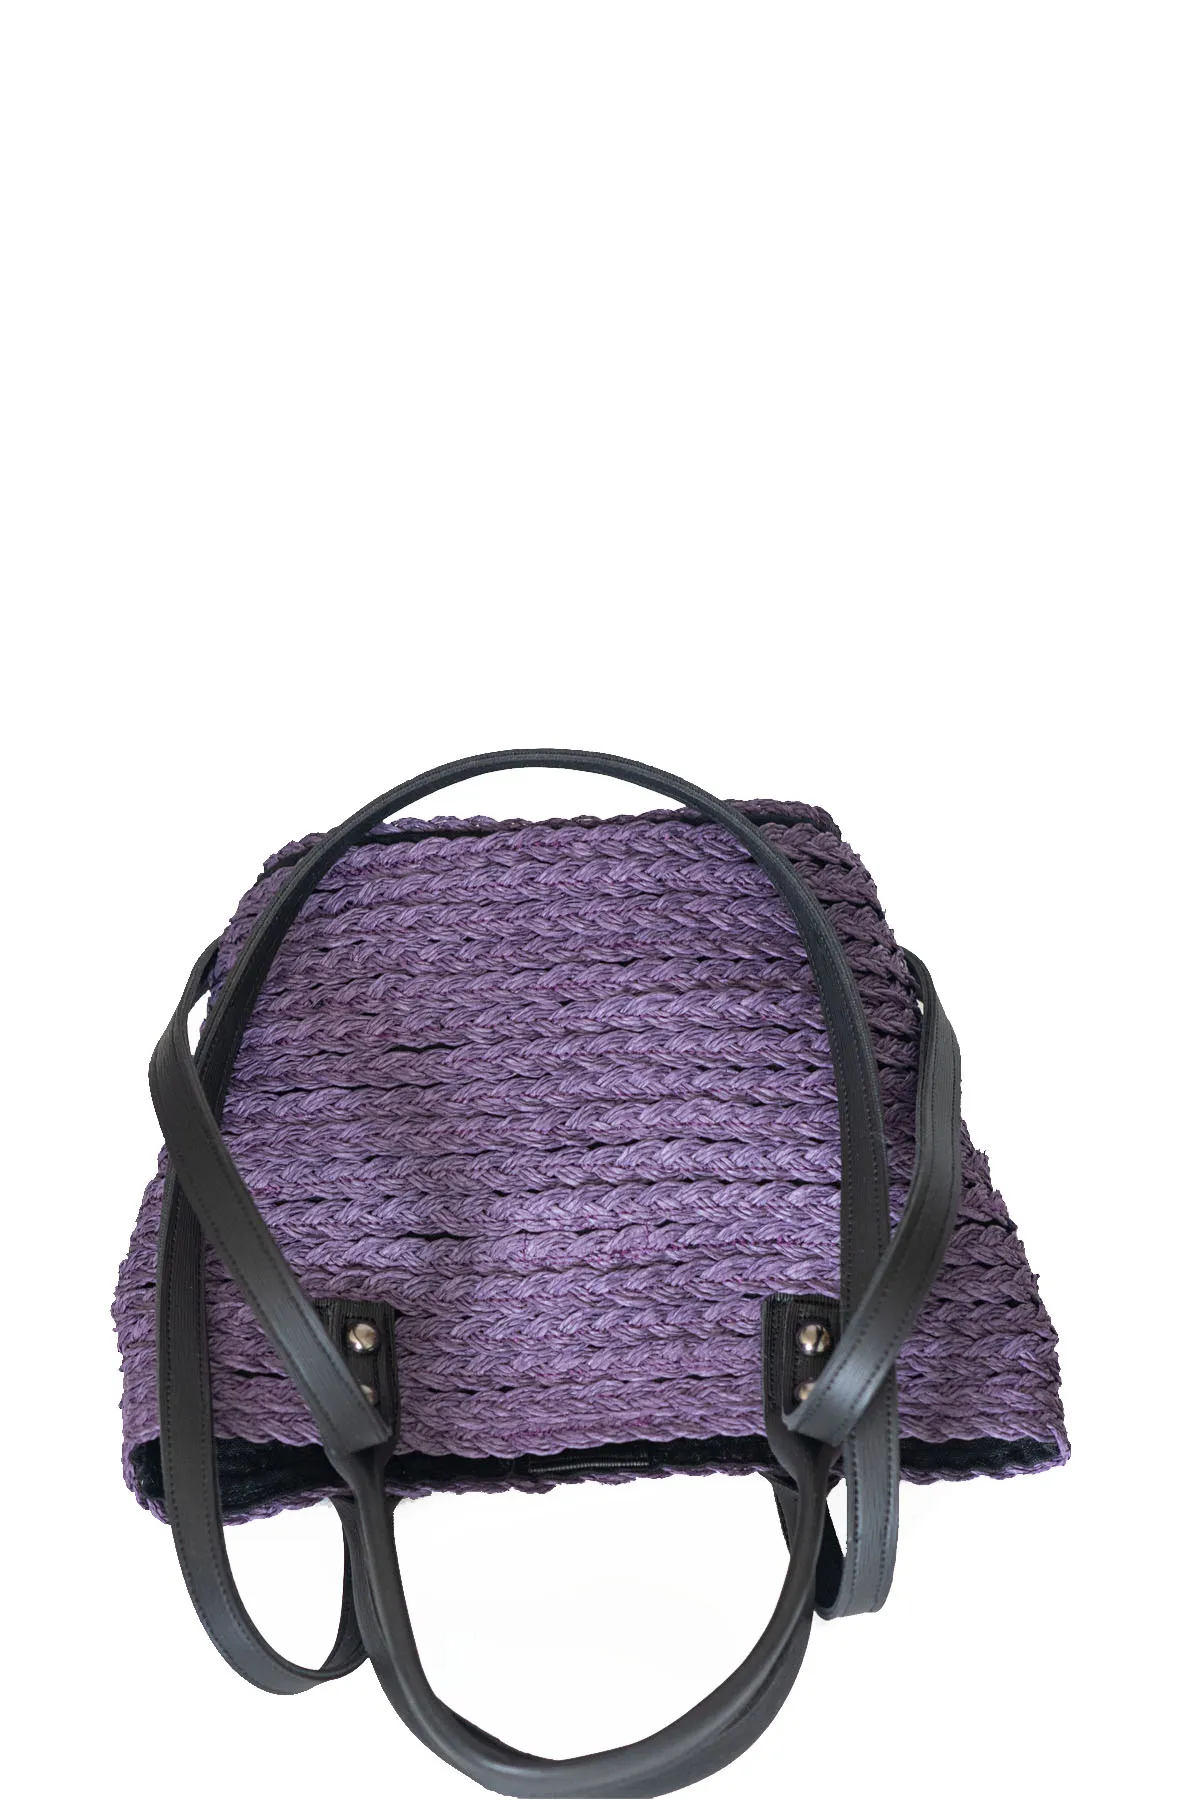 Palha feminina dupla alça bolsa de lona dupla alça bolsa de ombro artesanal cesta sacos para mulher praia balde saco 2021